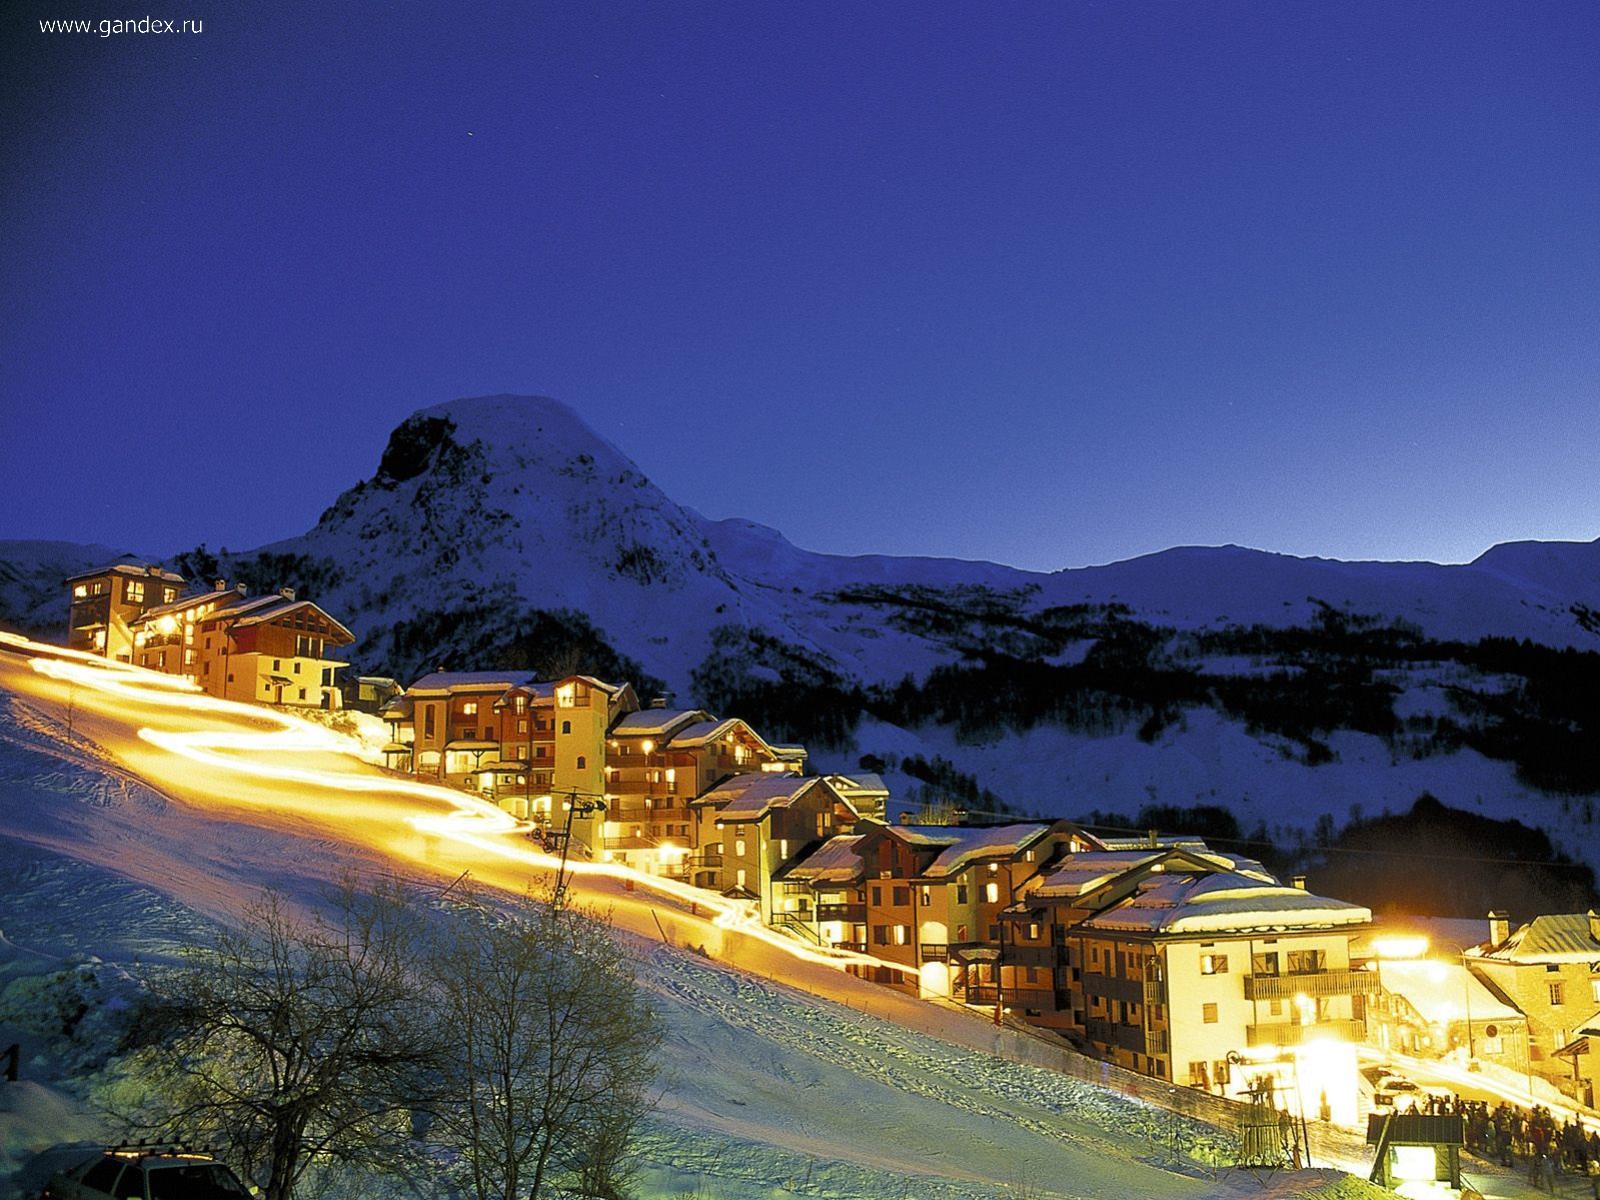 Обои Курорт и лыжная трасса во Франции, ночные и яркие для рабочего стола 1600x1200